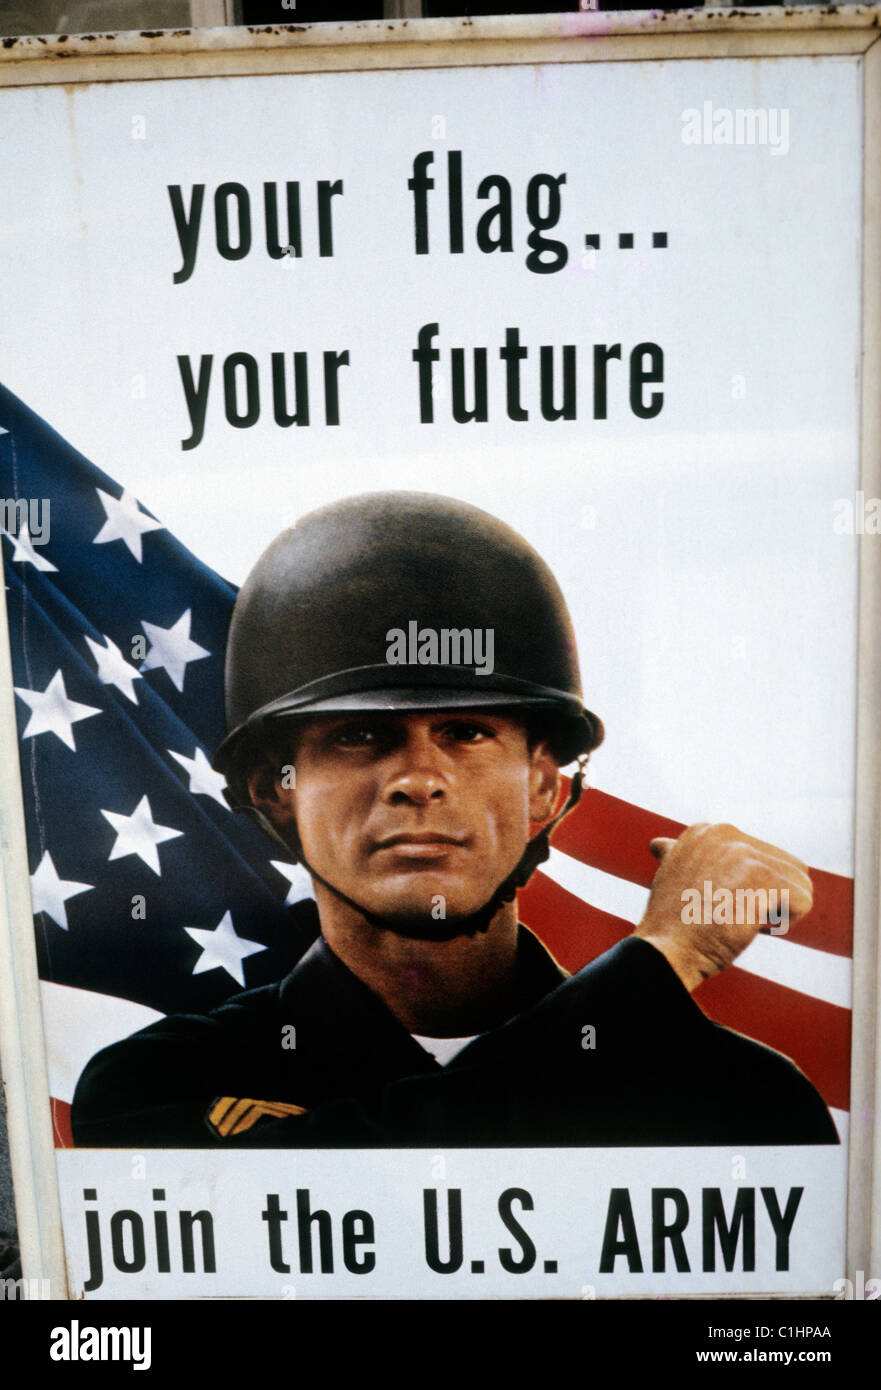 Amerikanischer Soldat bei der Rekrutierung militärischer Rekrutierung Plakat Werbung mit dem Titel 'Deine Flagge... Deine Zukunft, tritt der US-Armee bei' USA Vereinigte Staaten von Amerika 1970s 1971 KATHY DEWITT Stockfoto